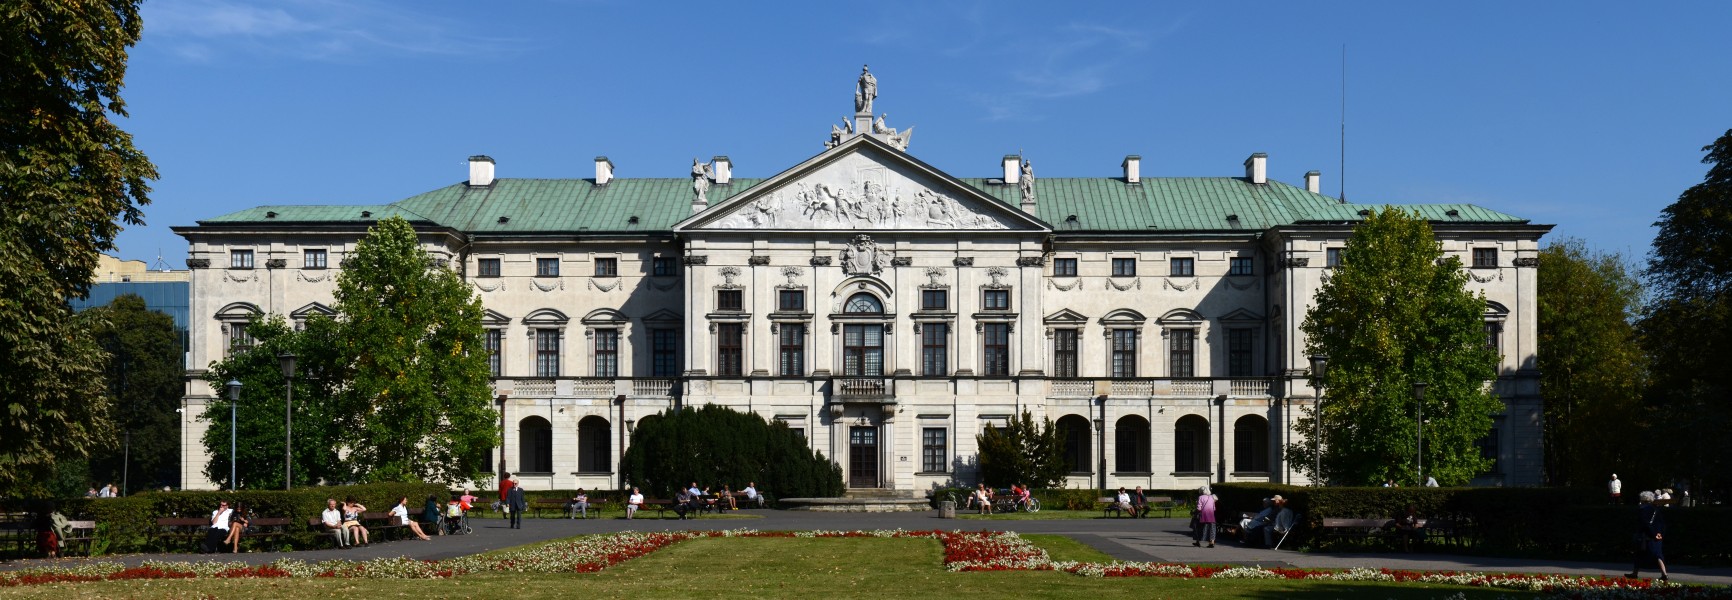 Pałac Krasińskich 2011